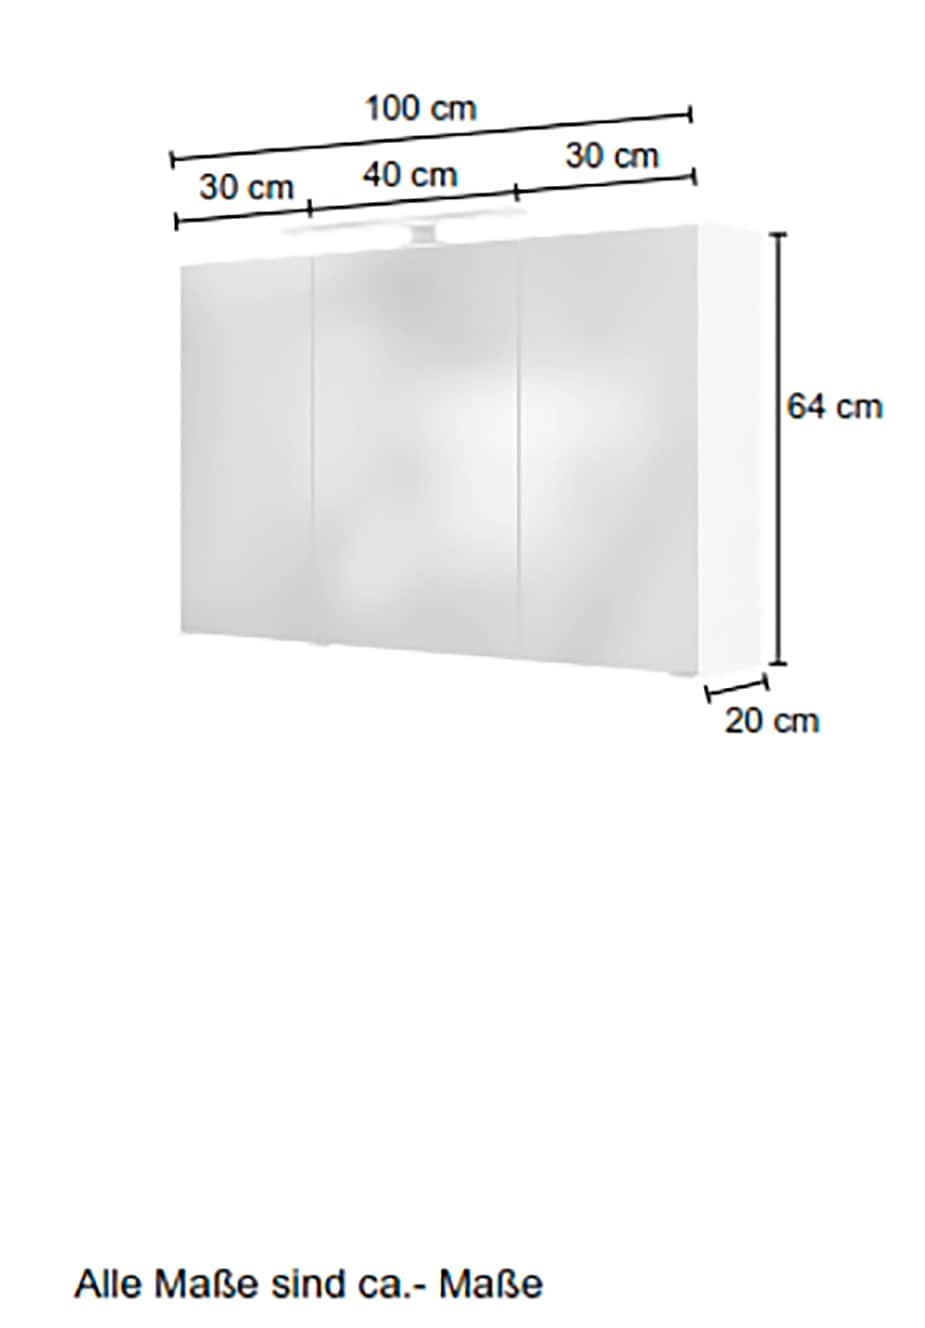 HELD MÖBEL Spiegelschrank »Matera«, Breite 100 cm, mit 6 verstellbaren Glasböden